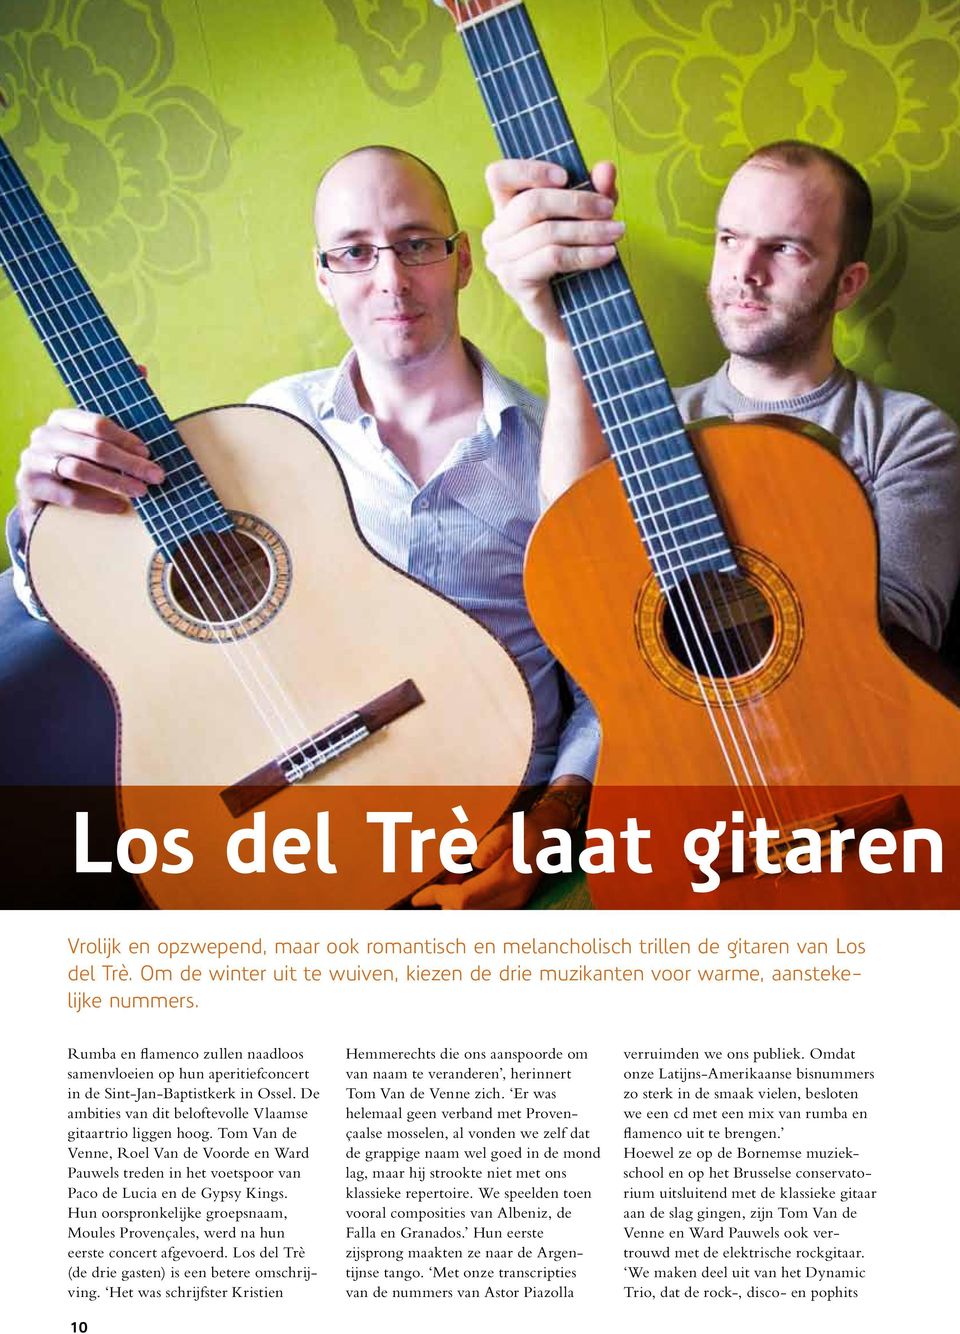 De ambities van dit beloftevolle Vlaamse gitaartrio liggen hoog. Tom Van de Venne, Roel Van de Voorde en Ward Pauwels treden in het voetspoor van Paco de Lucia en de Gypsy Kings.